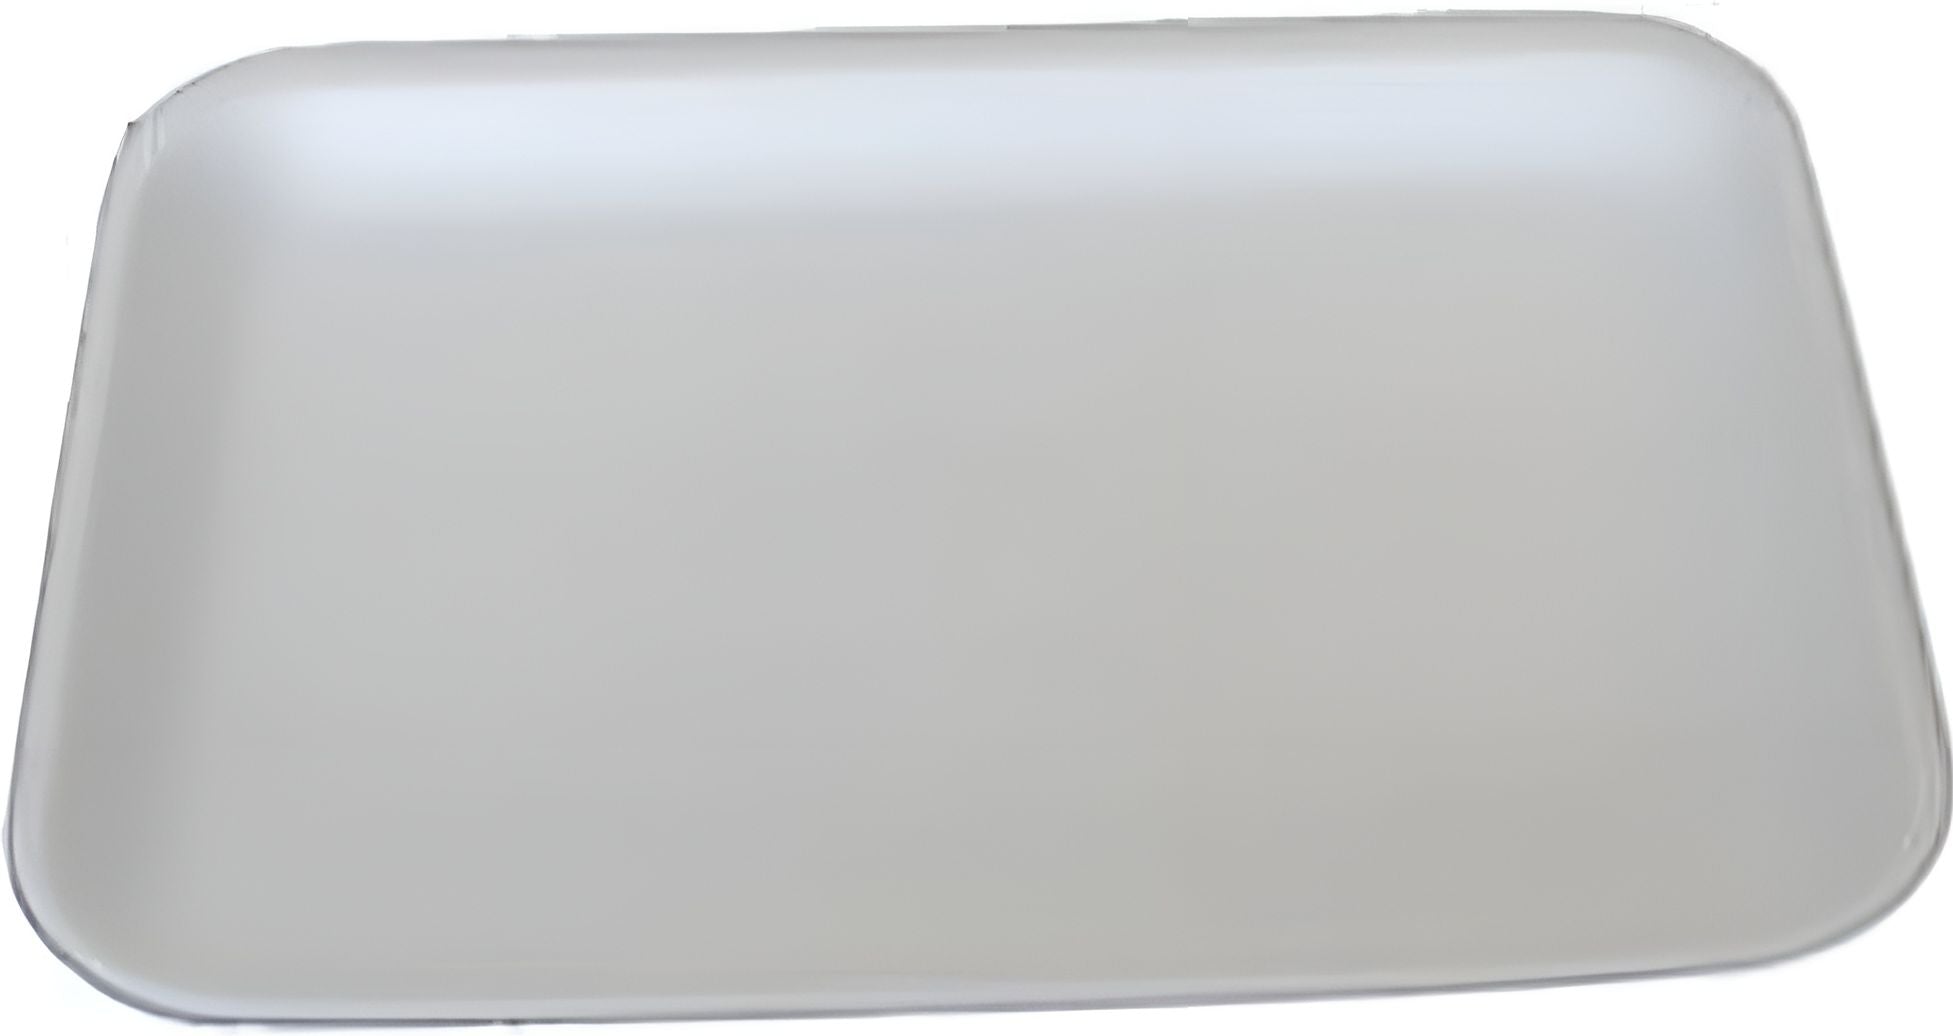 Dyne-A-Pak Inc. - 8.25" x 6" x 1.875" 42P White Heavy Duty Foam Meat Trays, 400 Per Case - 20142HDW00